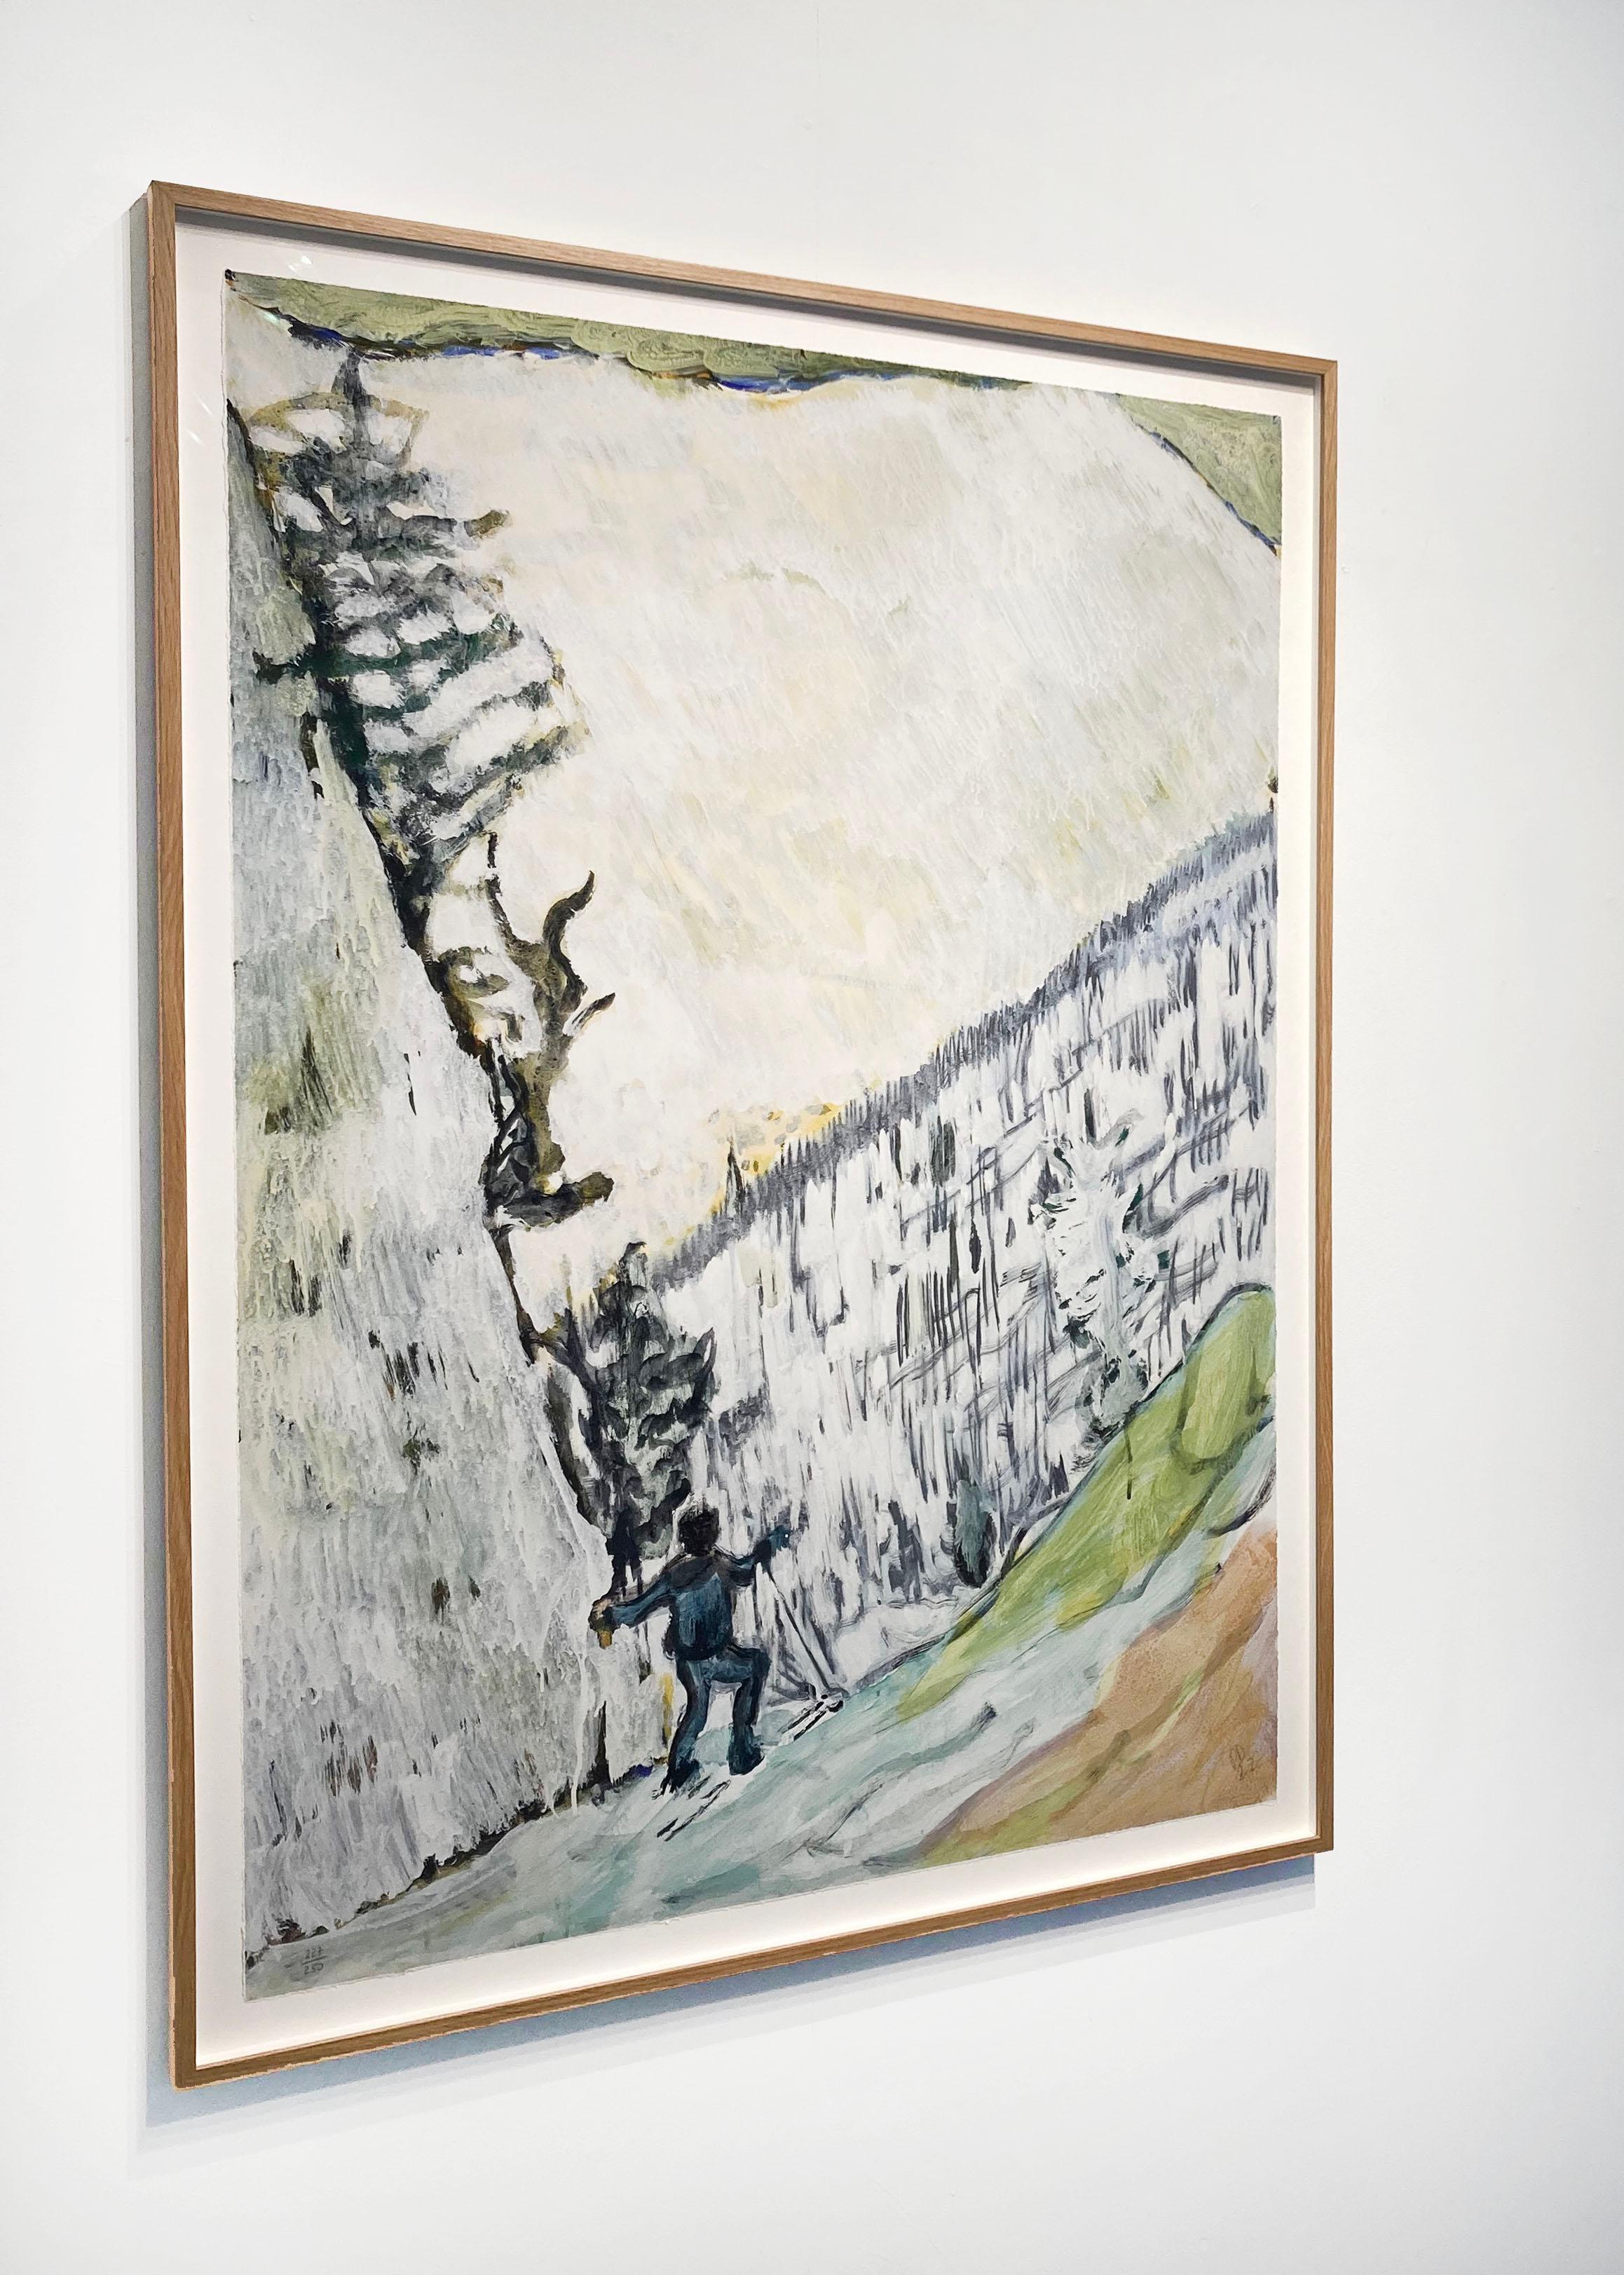 Artist:  Doig, Peter
Title:  D1-2 Couloir 2
Series:  D1 Zermatt
Date:  2022
Medium:  Giclee Print on Cotton Smooth Rag
Unframed Dimensions:  44.75